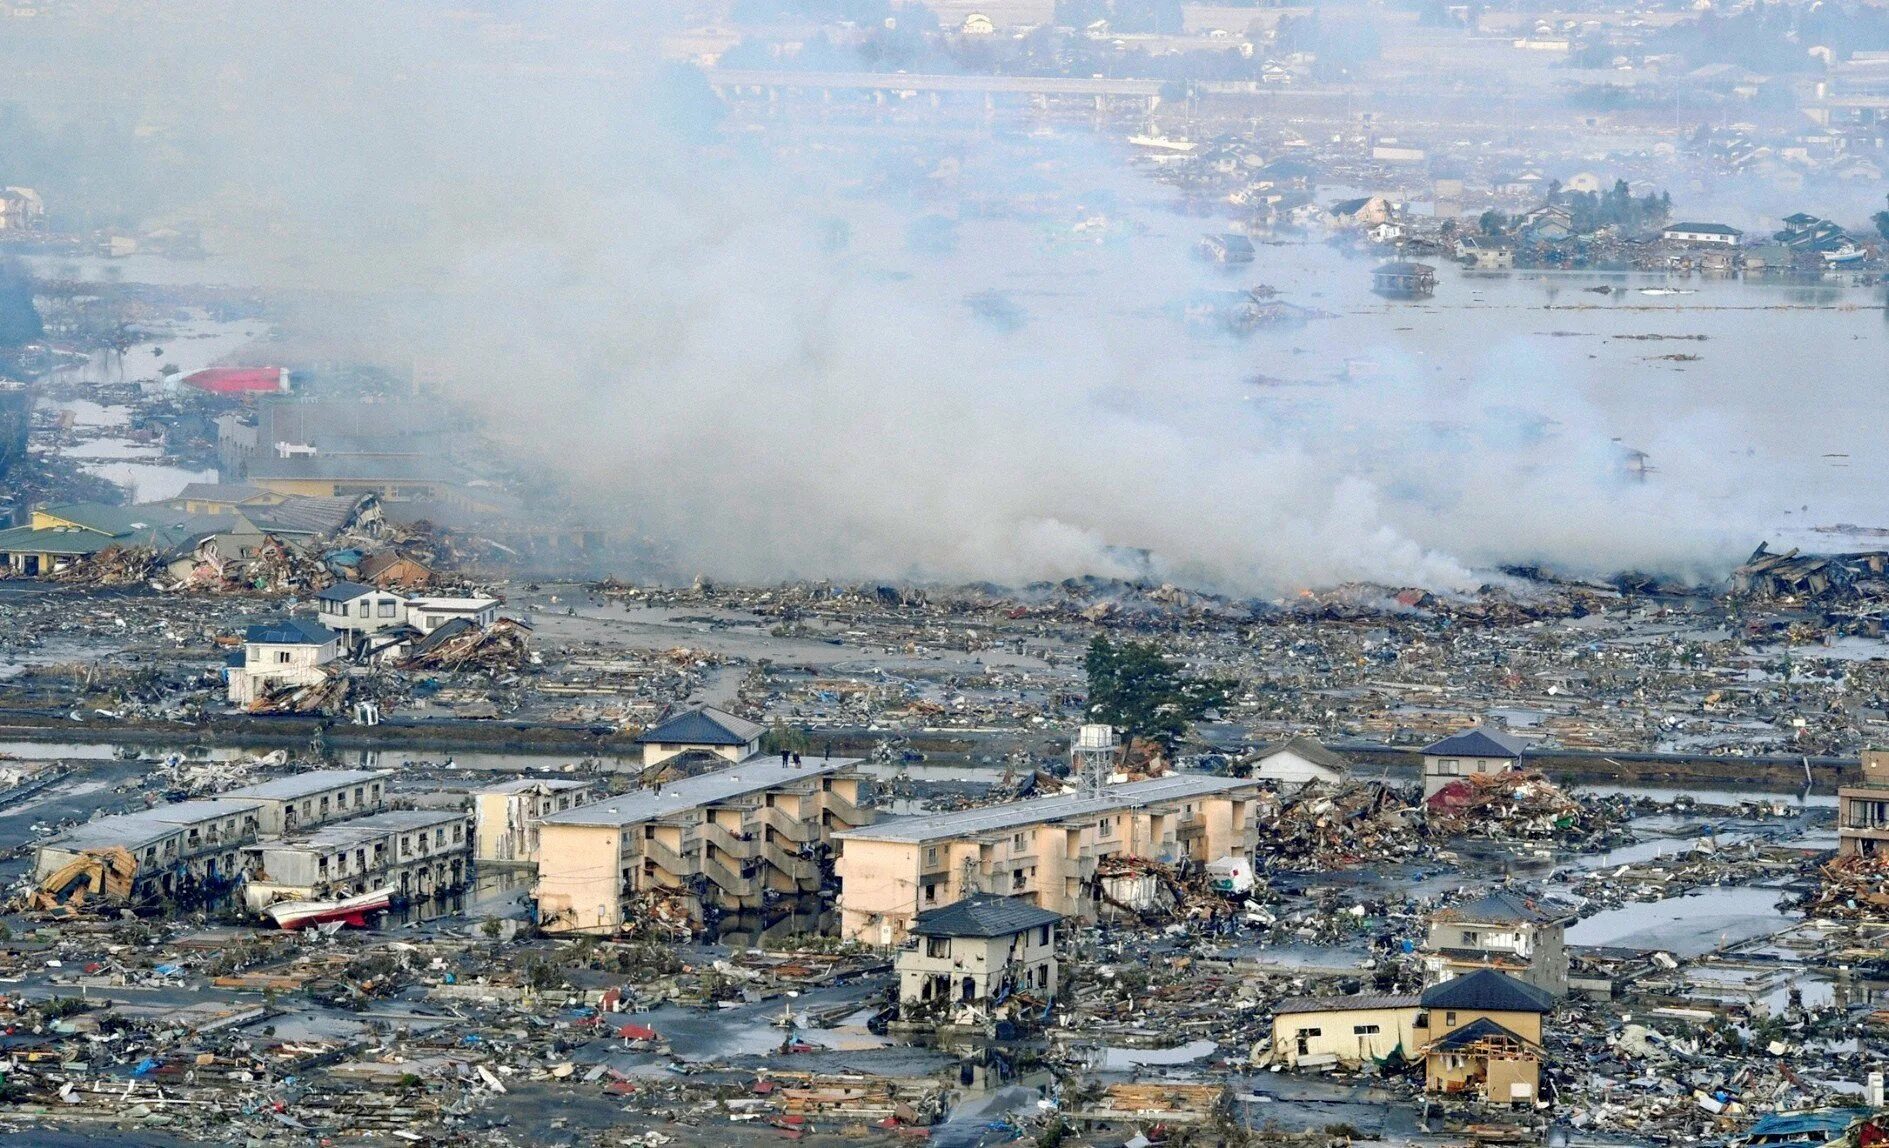 Землетрясение в 11 году. ЦУНАМИ В Японии в 2011. Япония 2011 землетрясение и ЦУНАМИ.